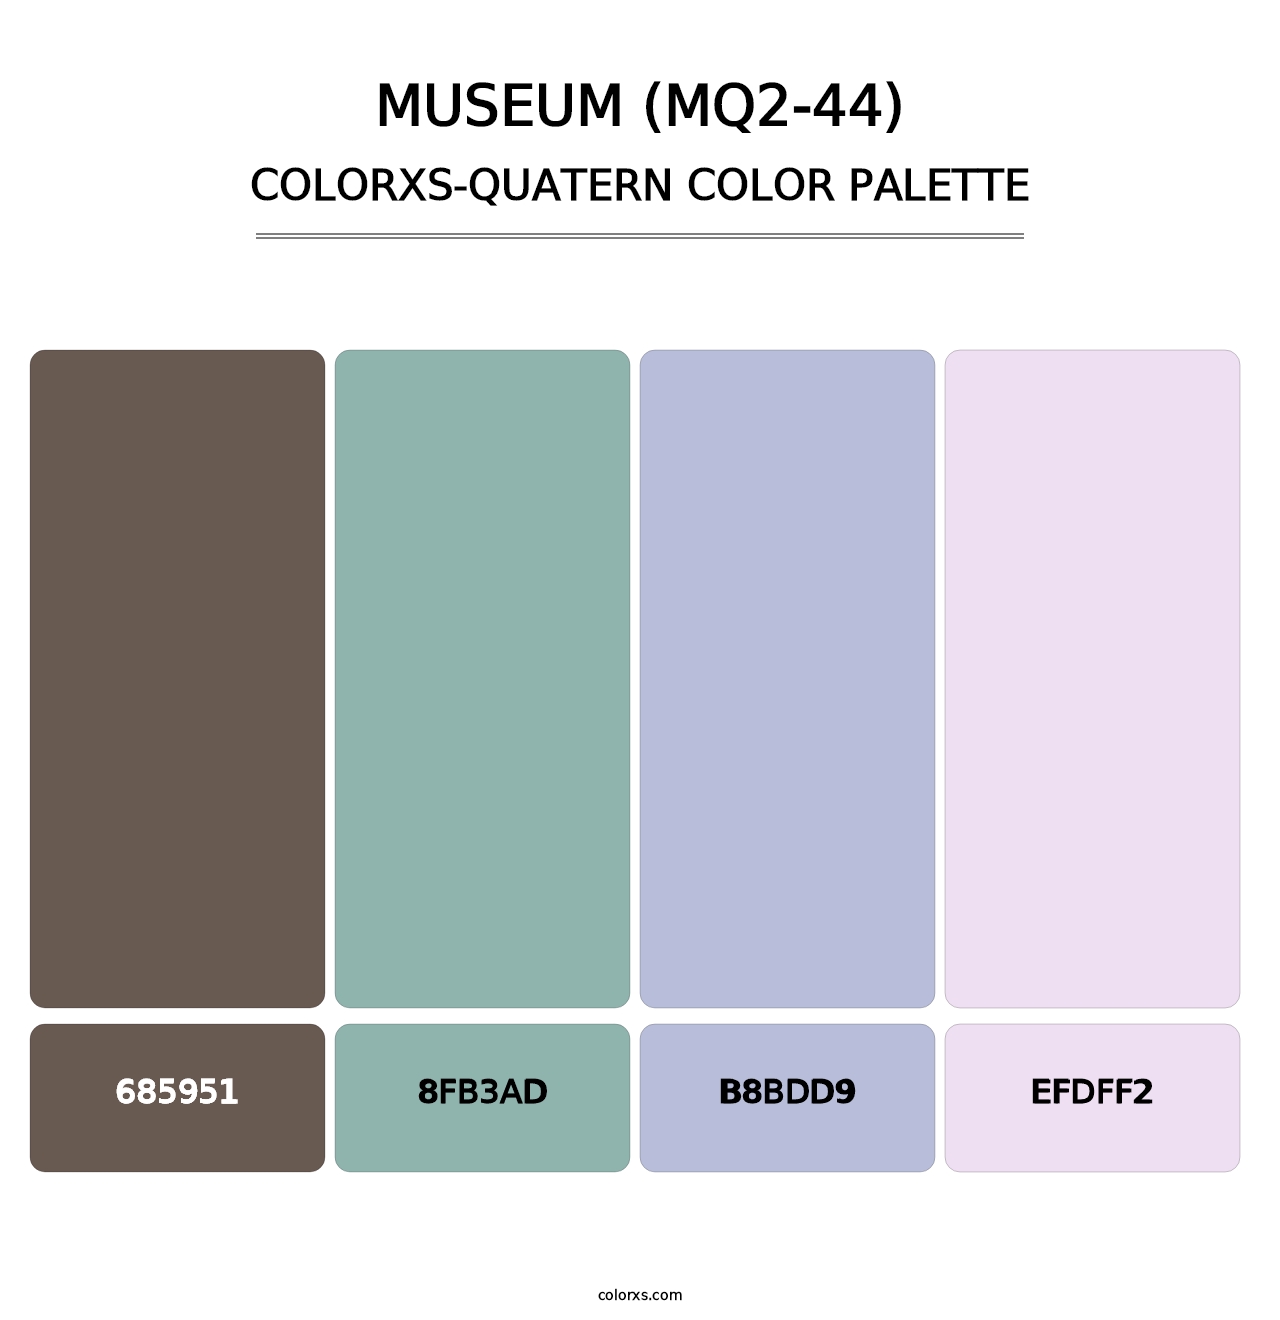 Museum (MQ2-44) - Colorxs Quatern Palette